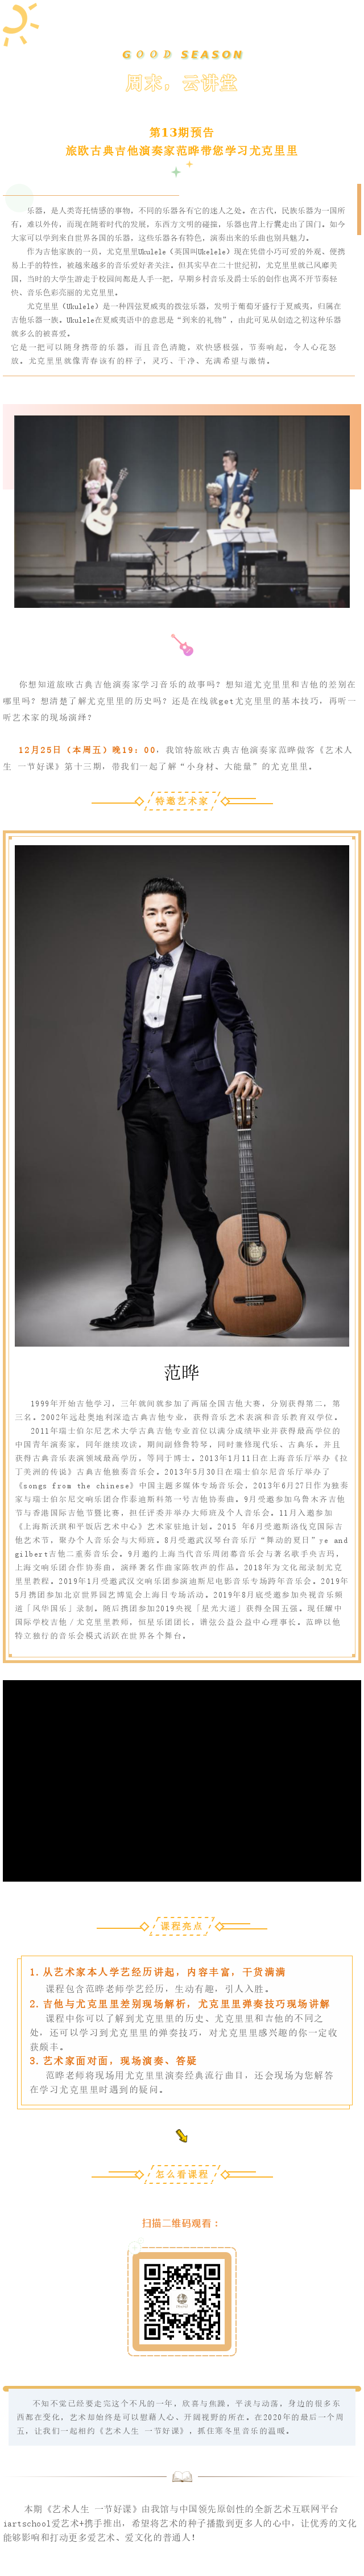 第13期预告_旅欧古典吉他演奏家范晔带您学习尤克里里.png